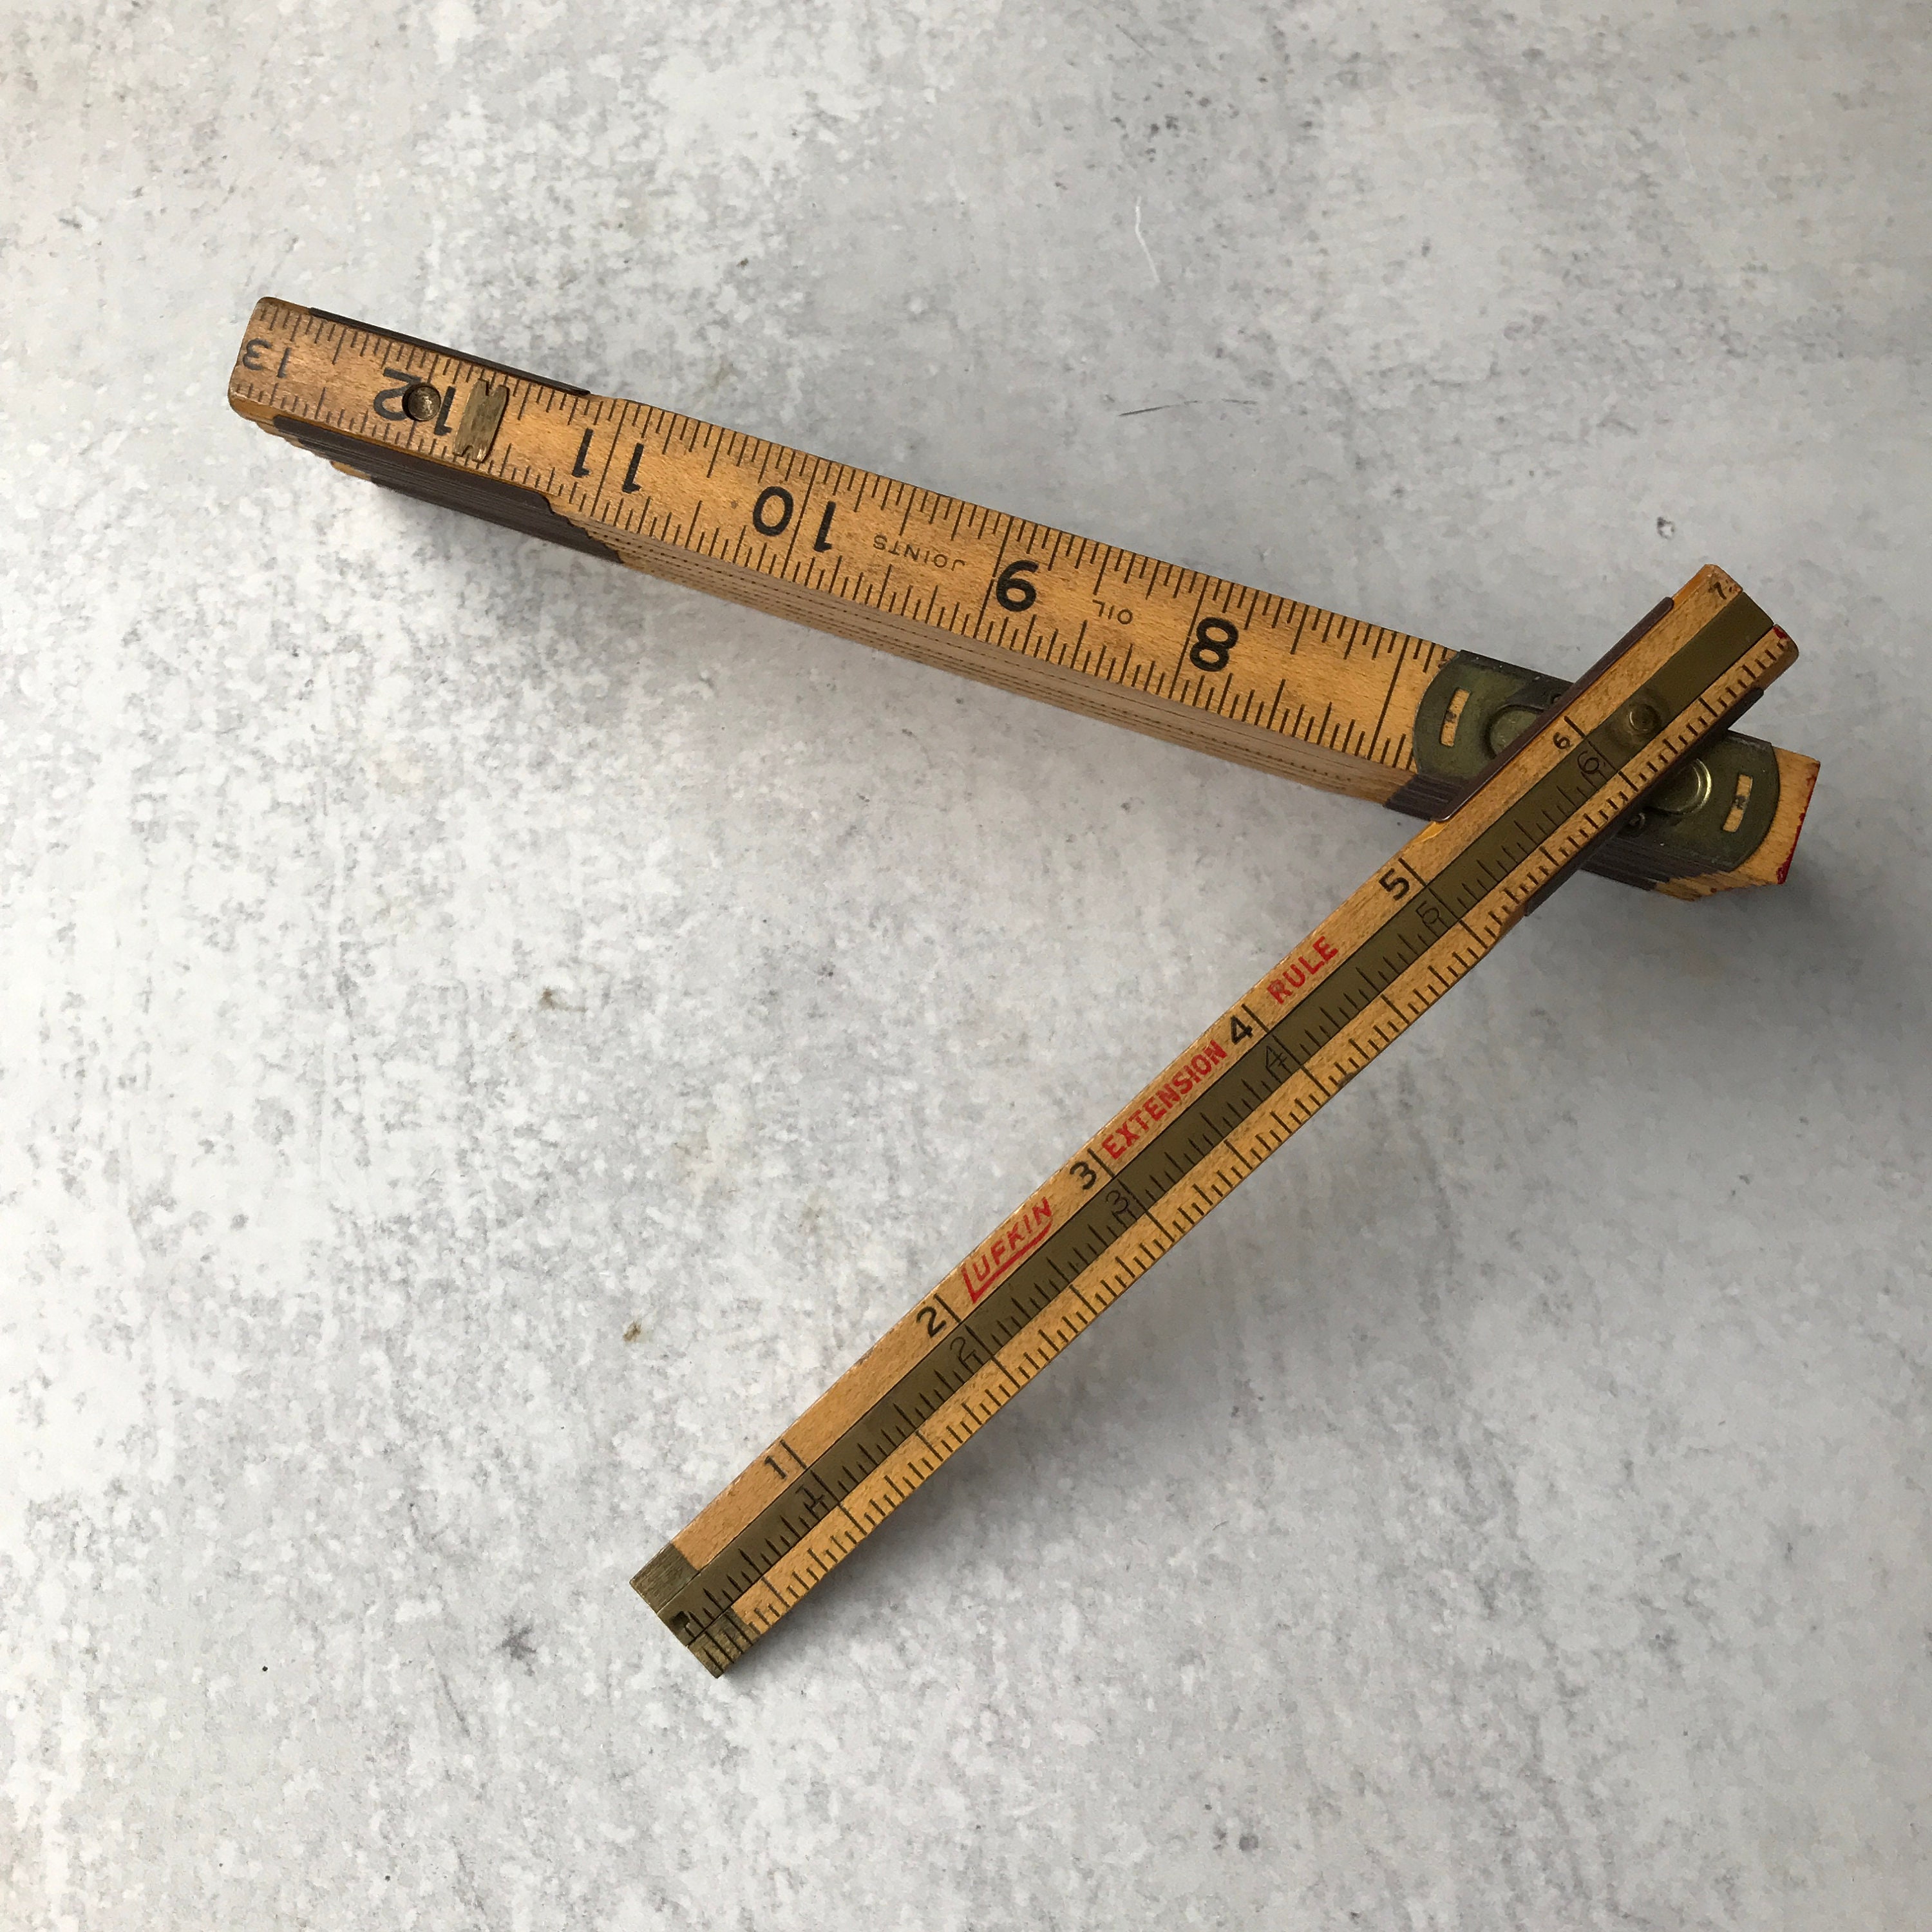 vintage wood ruler lot, 20+ old wooden measuring rulers